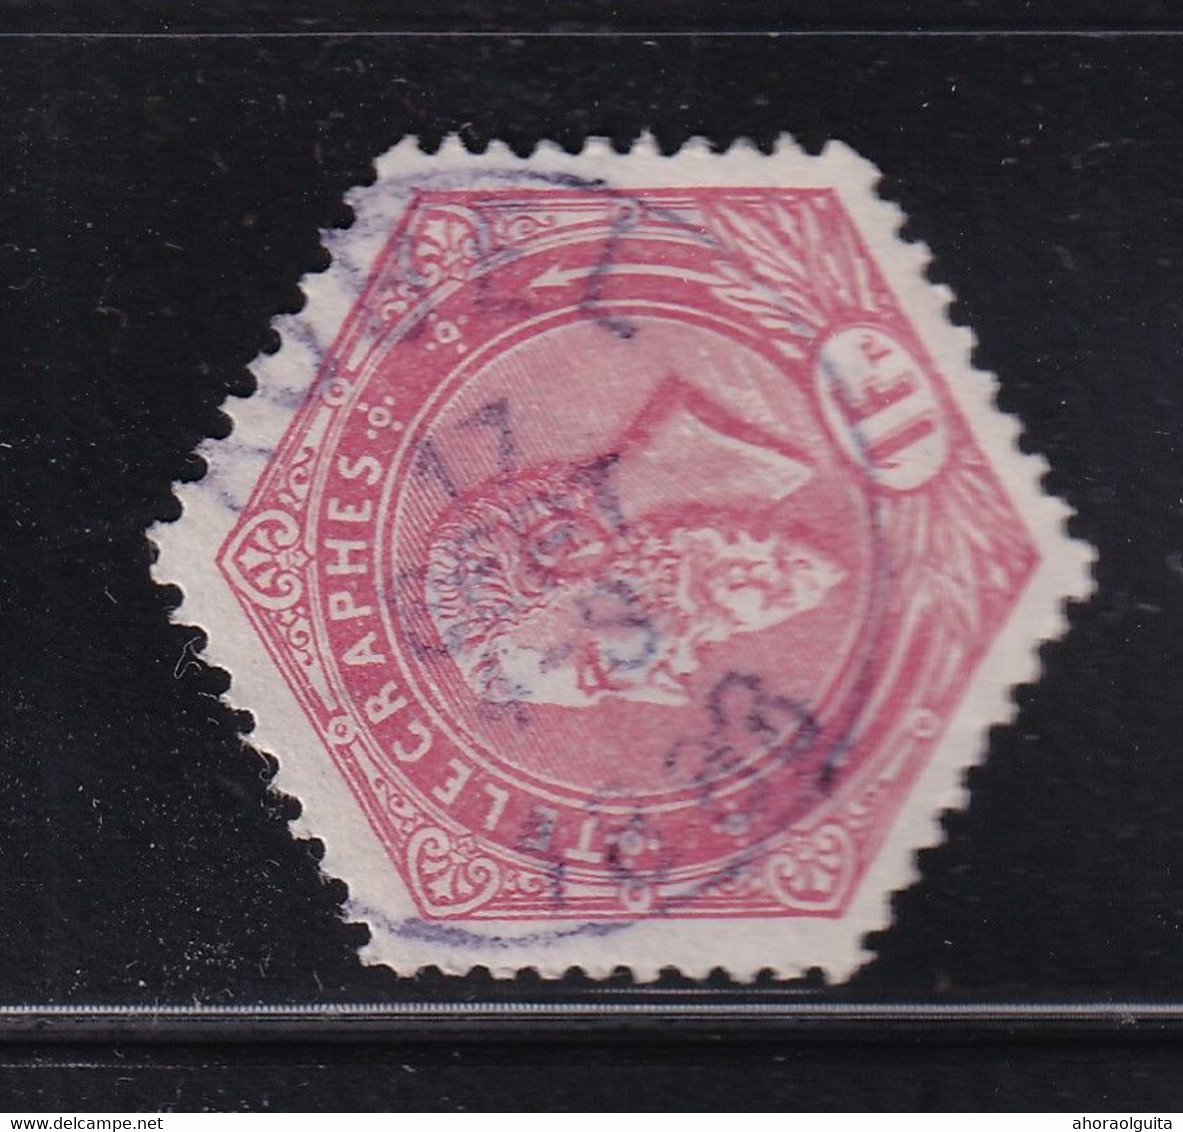 DDDD 411  --  Timbre Télégraphe Cachet Postal Simple Cercle AUBEL 1888 - Telegraph [TG]